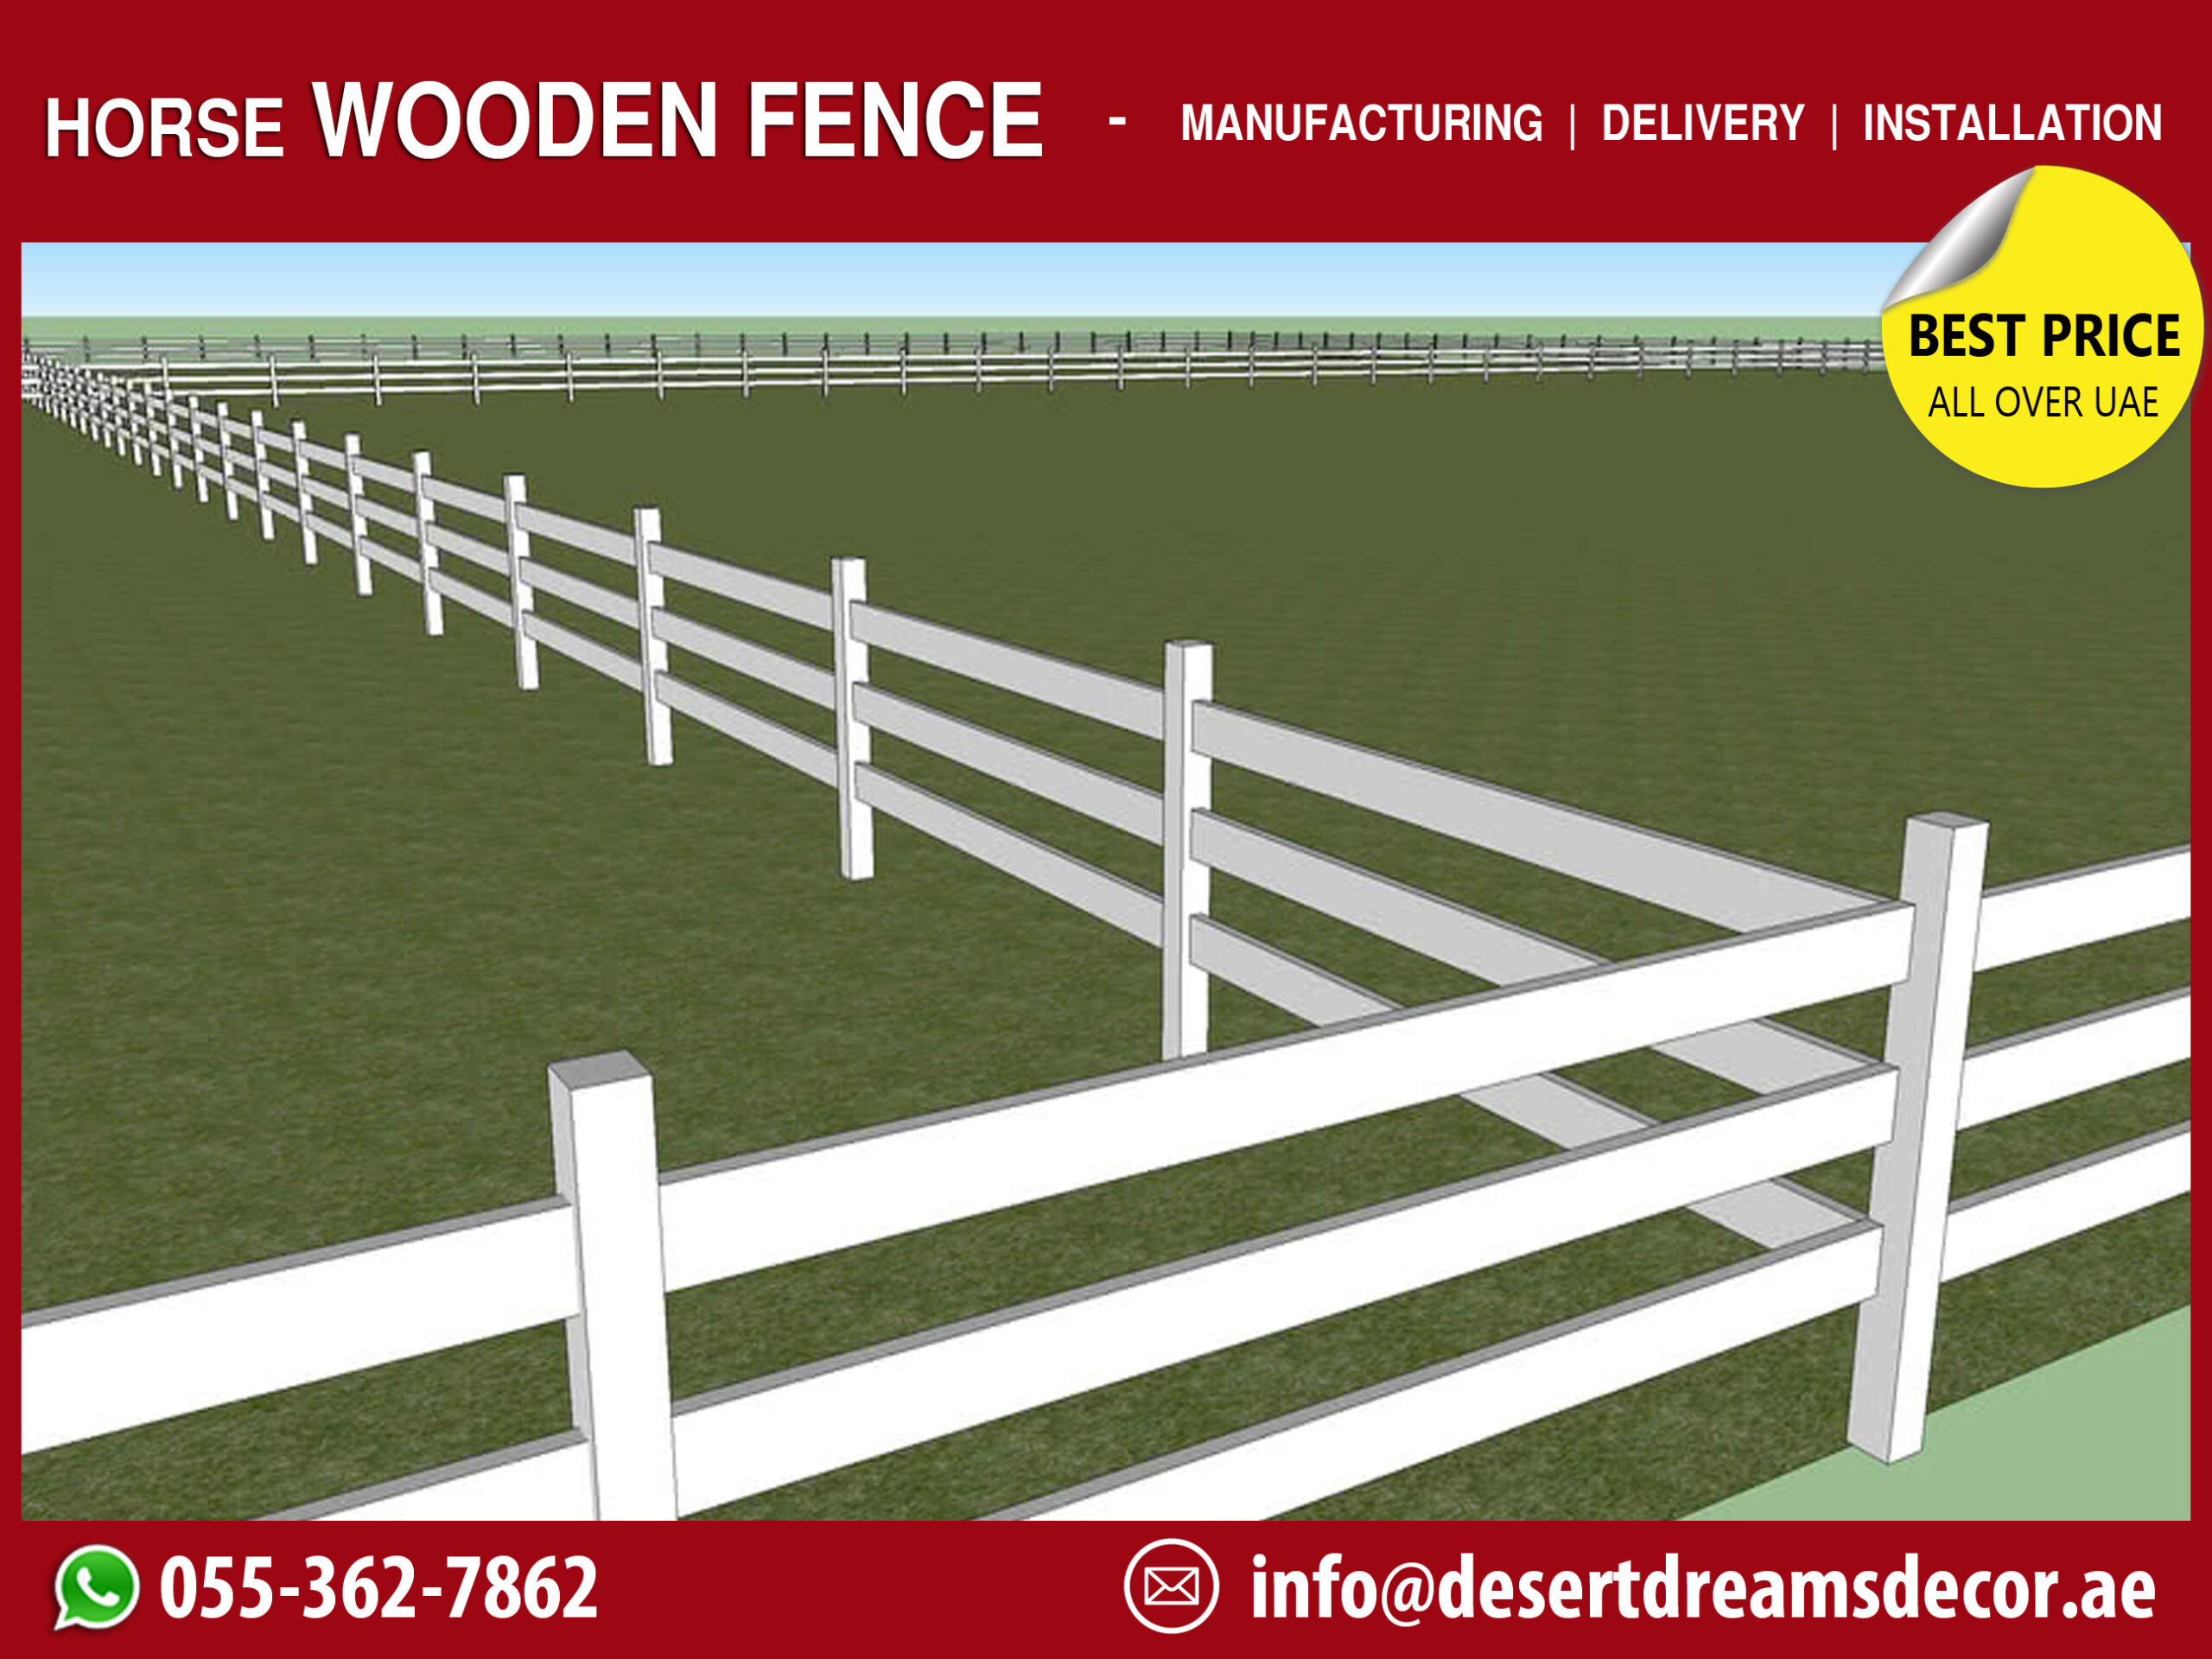 Horse Wooden Fences in UAE-1.jpg